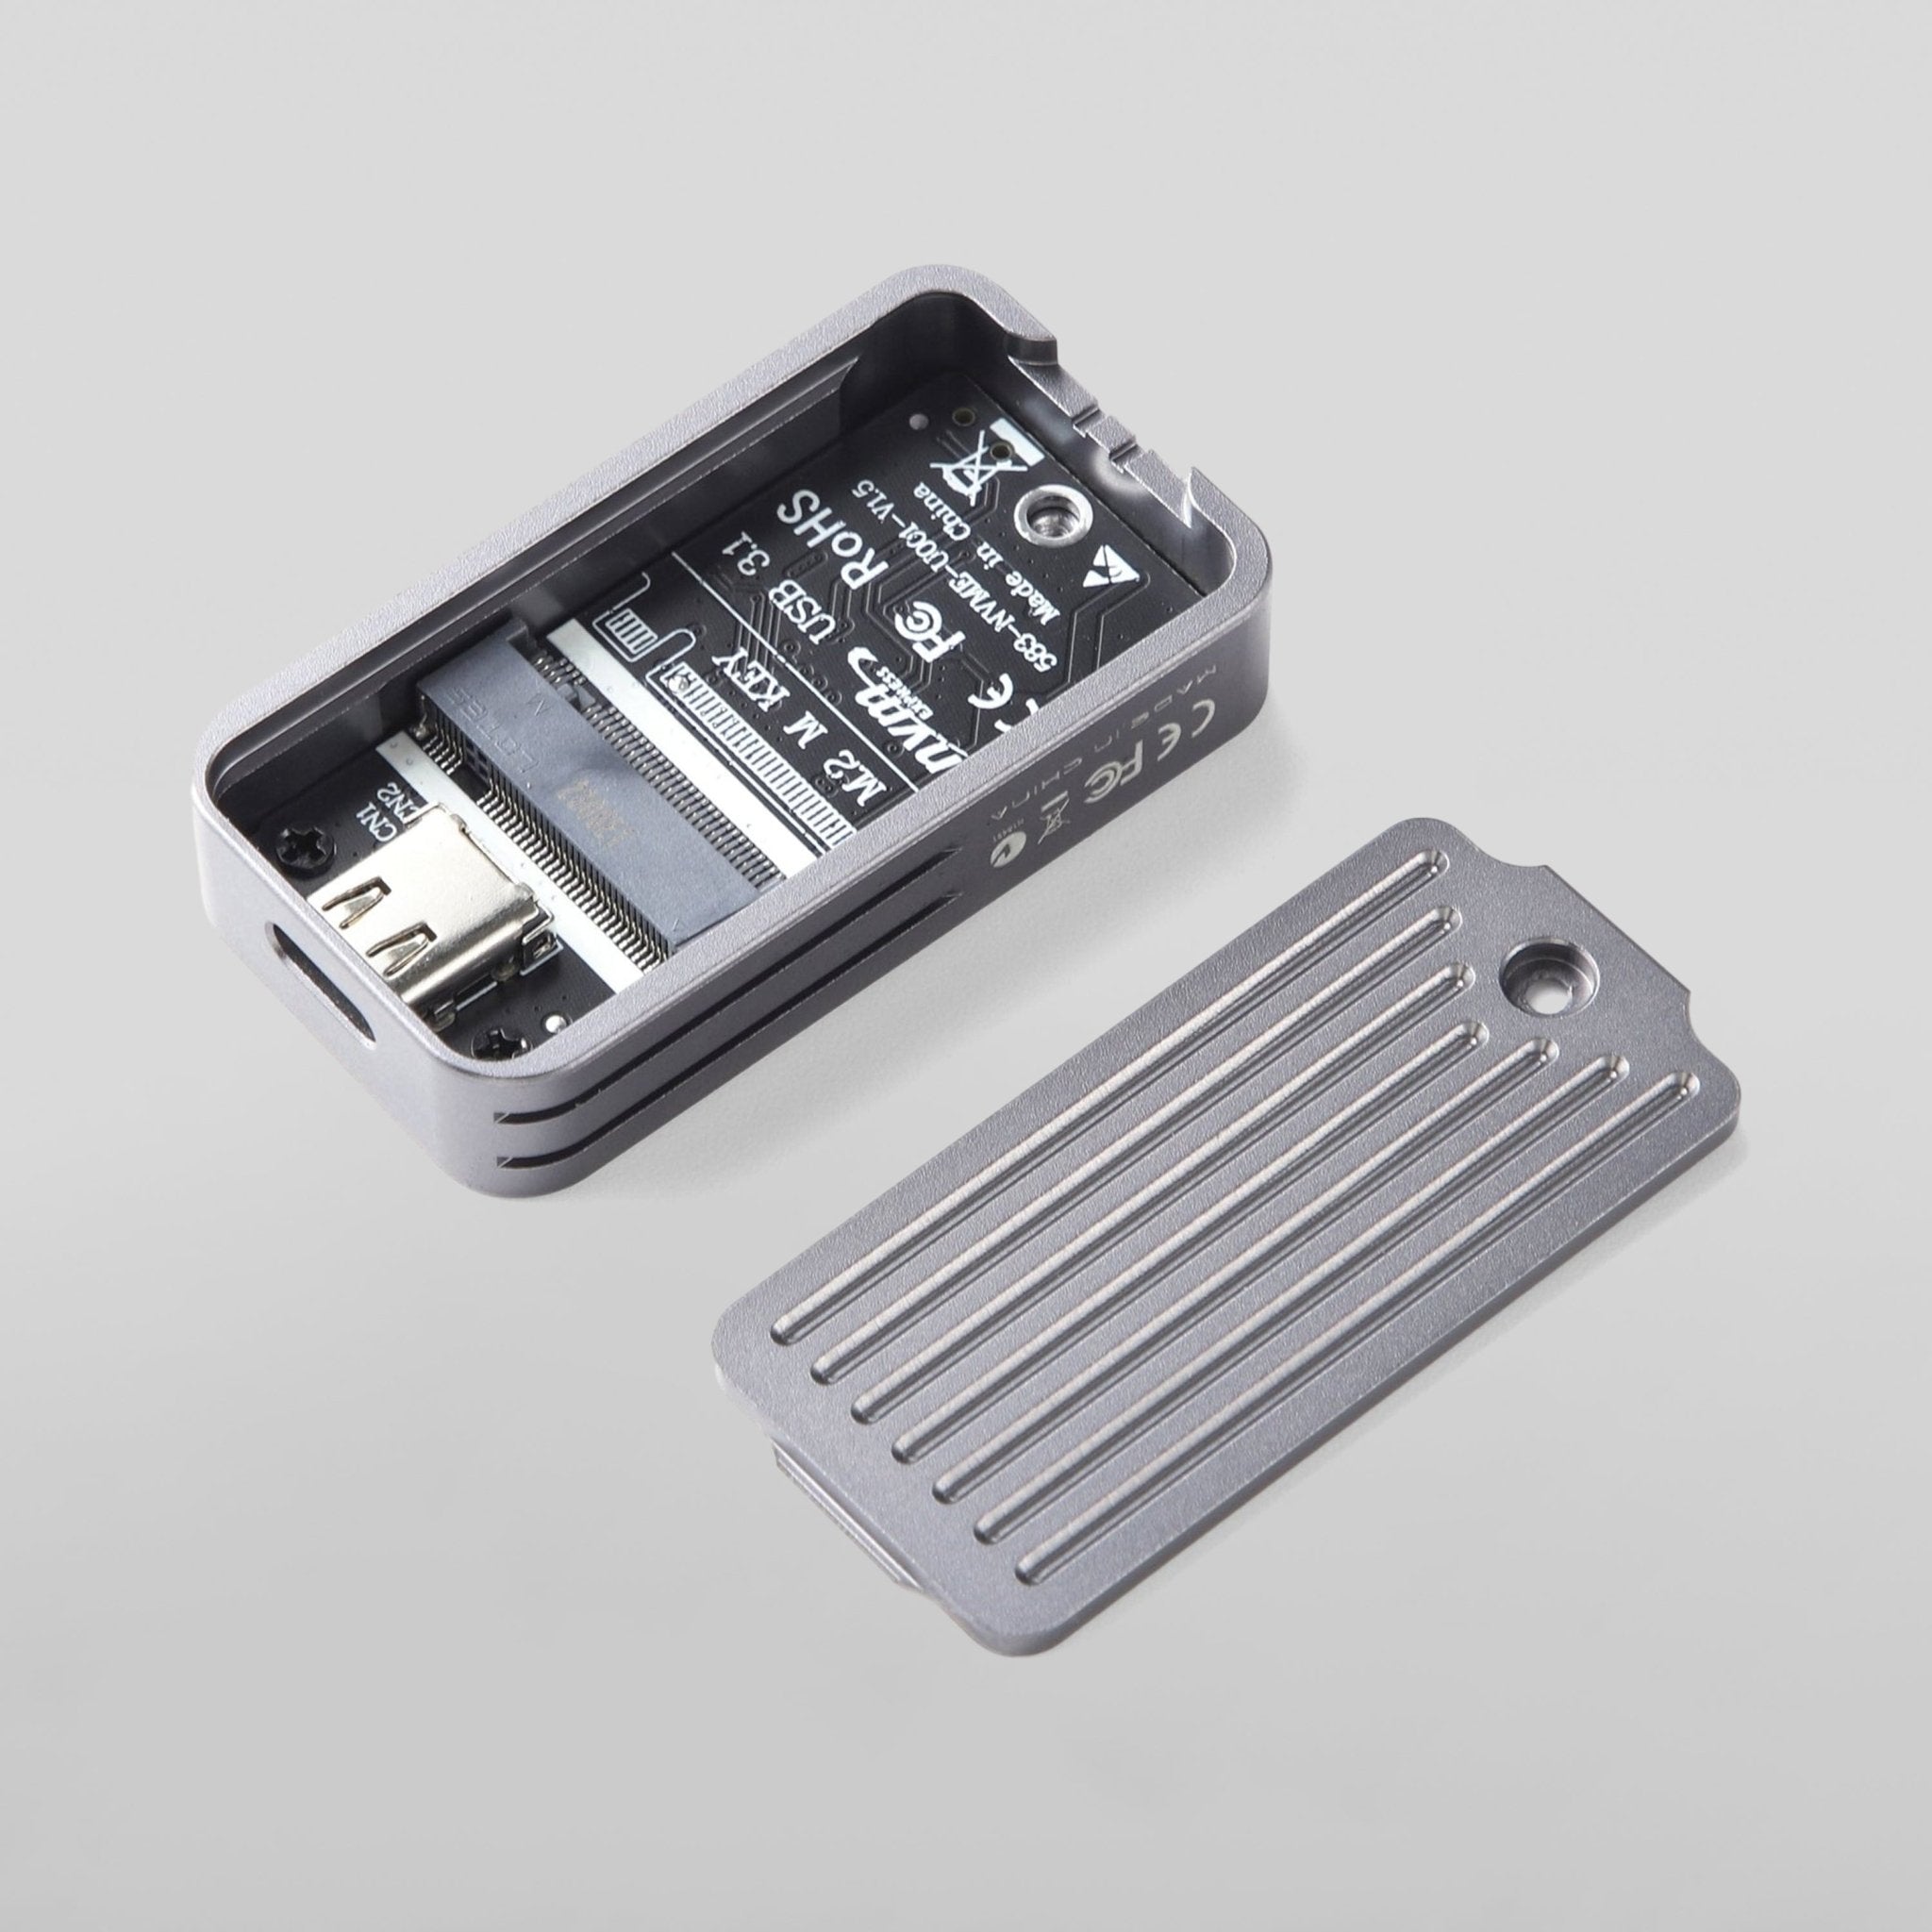 M2 Ssd Case M.2 Nvme 2230 Boîtier SSD, USB 3.2 10gbps à Nvme M-key Disque  SSD externe Ca